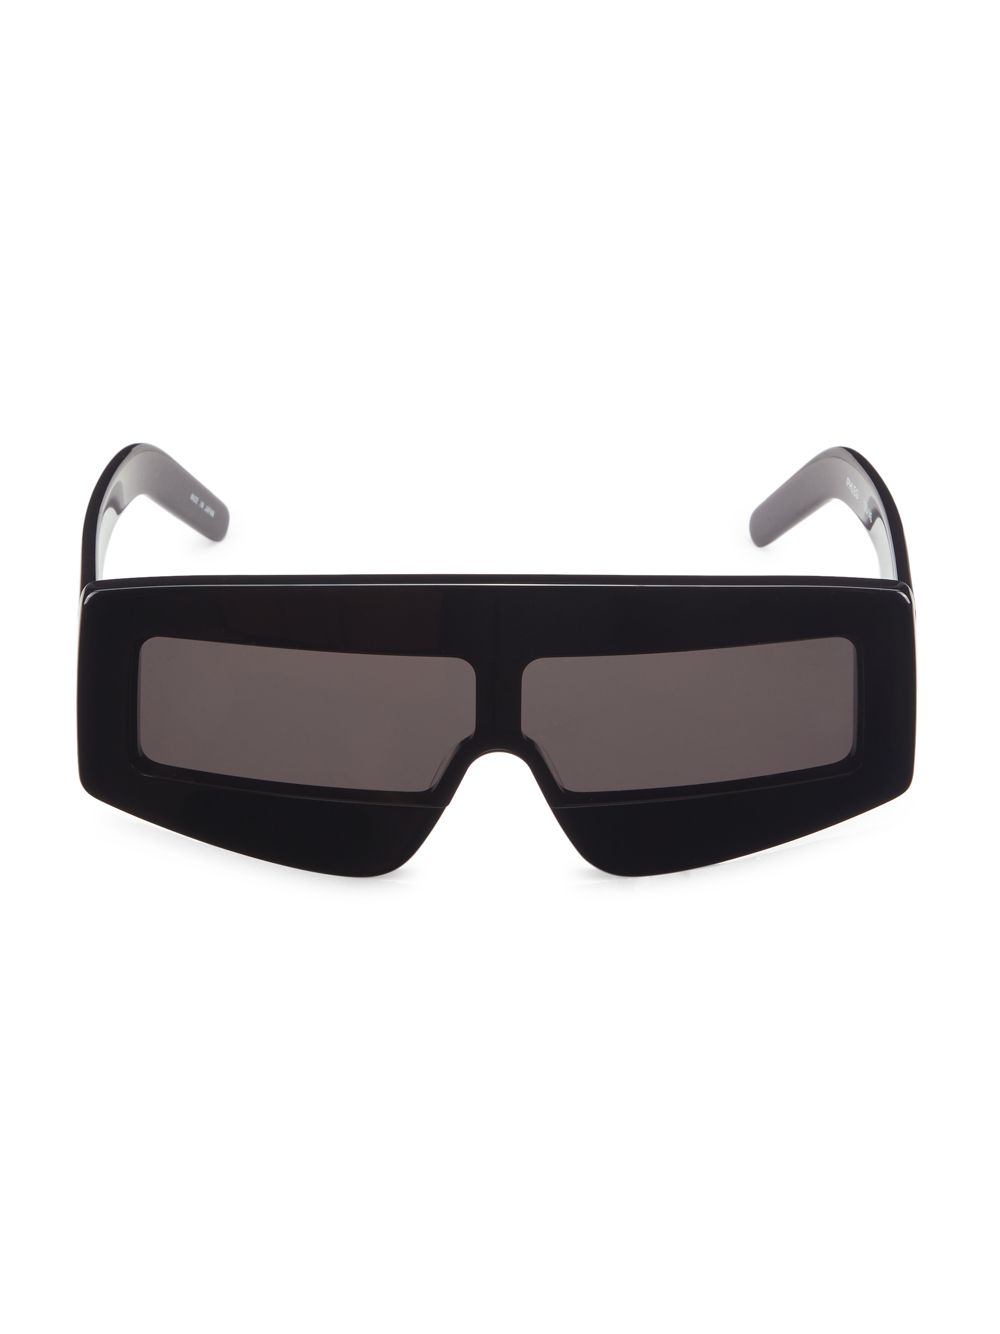 Прямоугольные солнцезащитные очки Phleg Rick Owens, черный